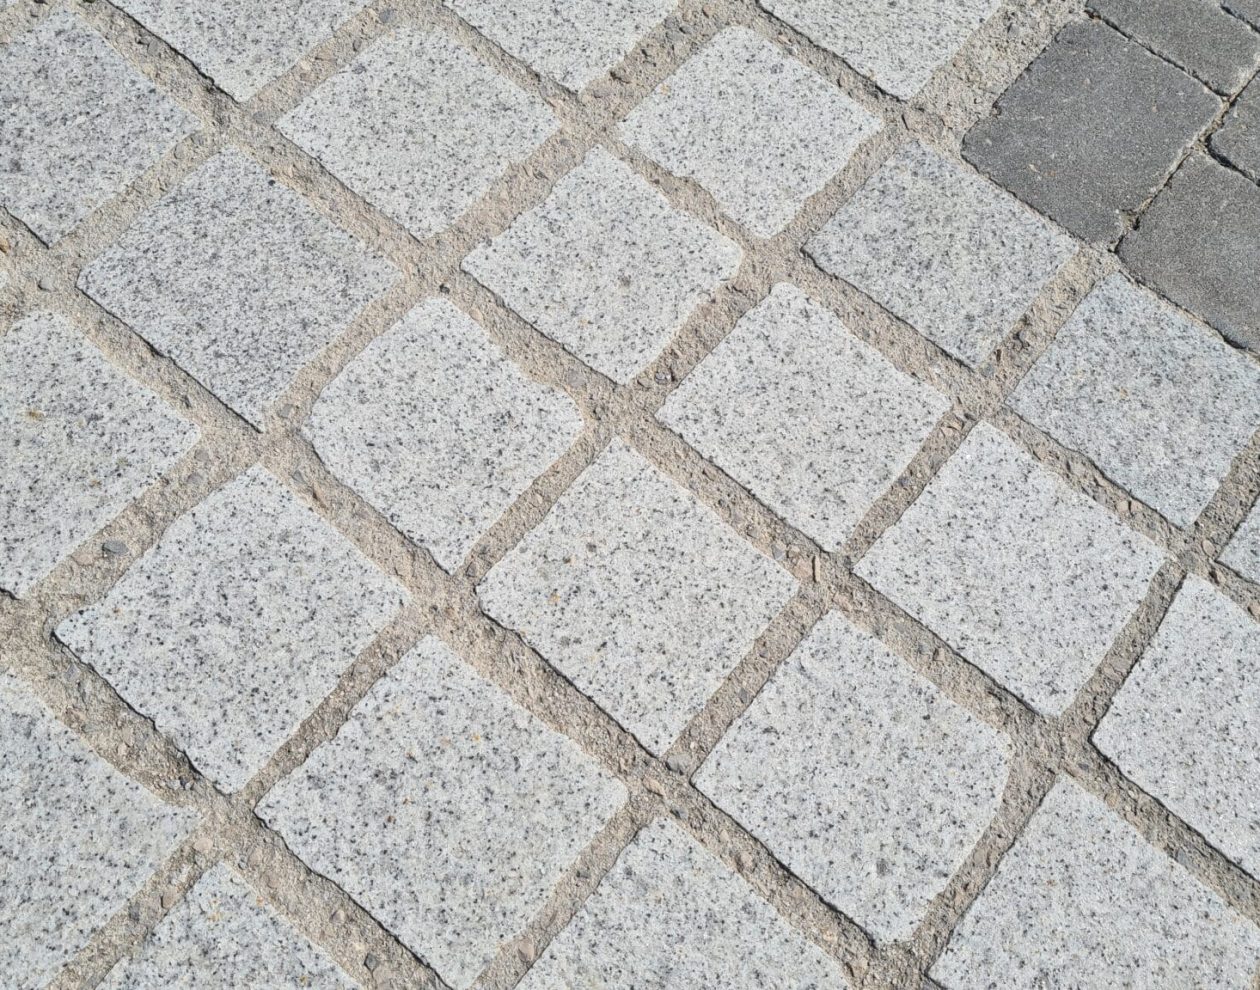 Pavimentación Granito Blanco Cristal - Santander (3)